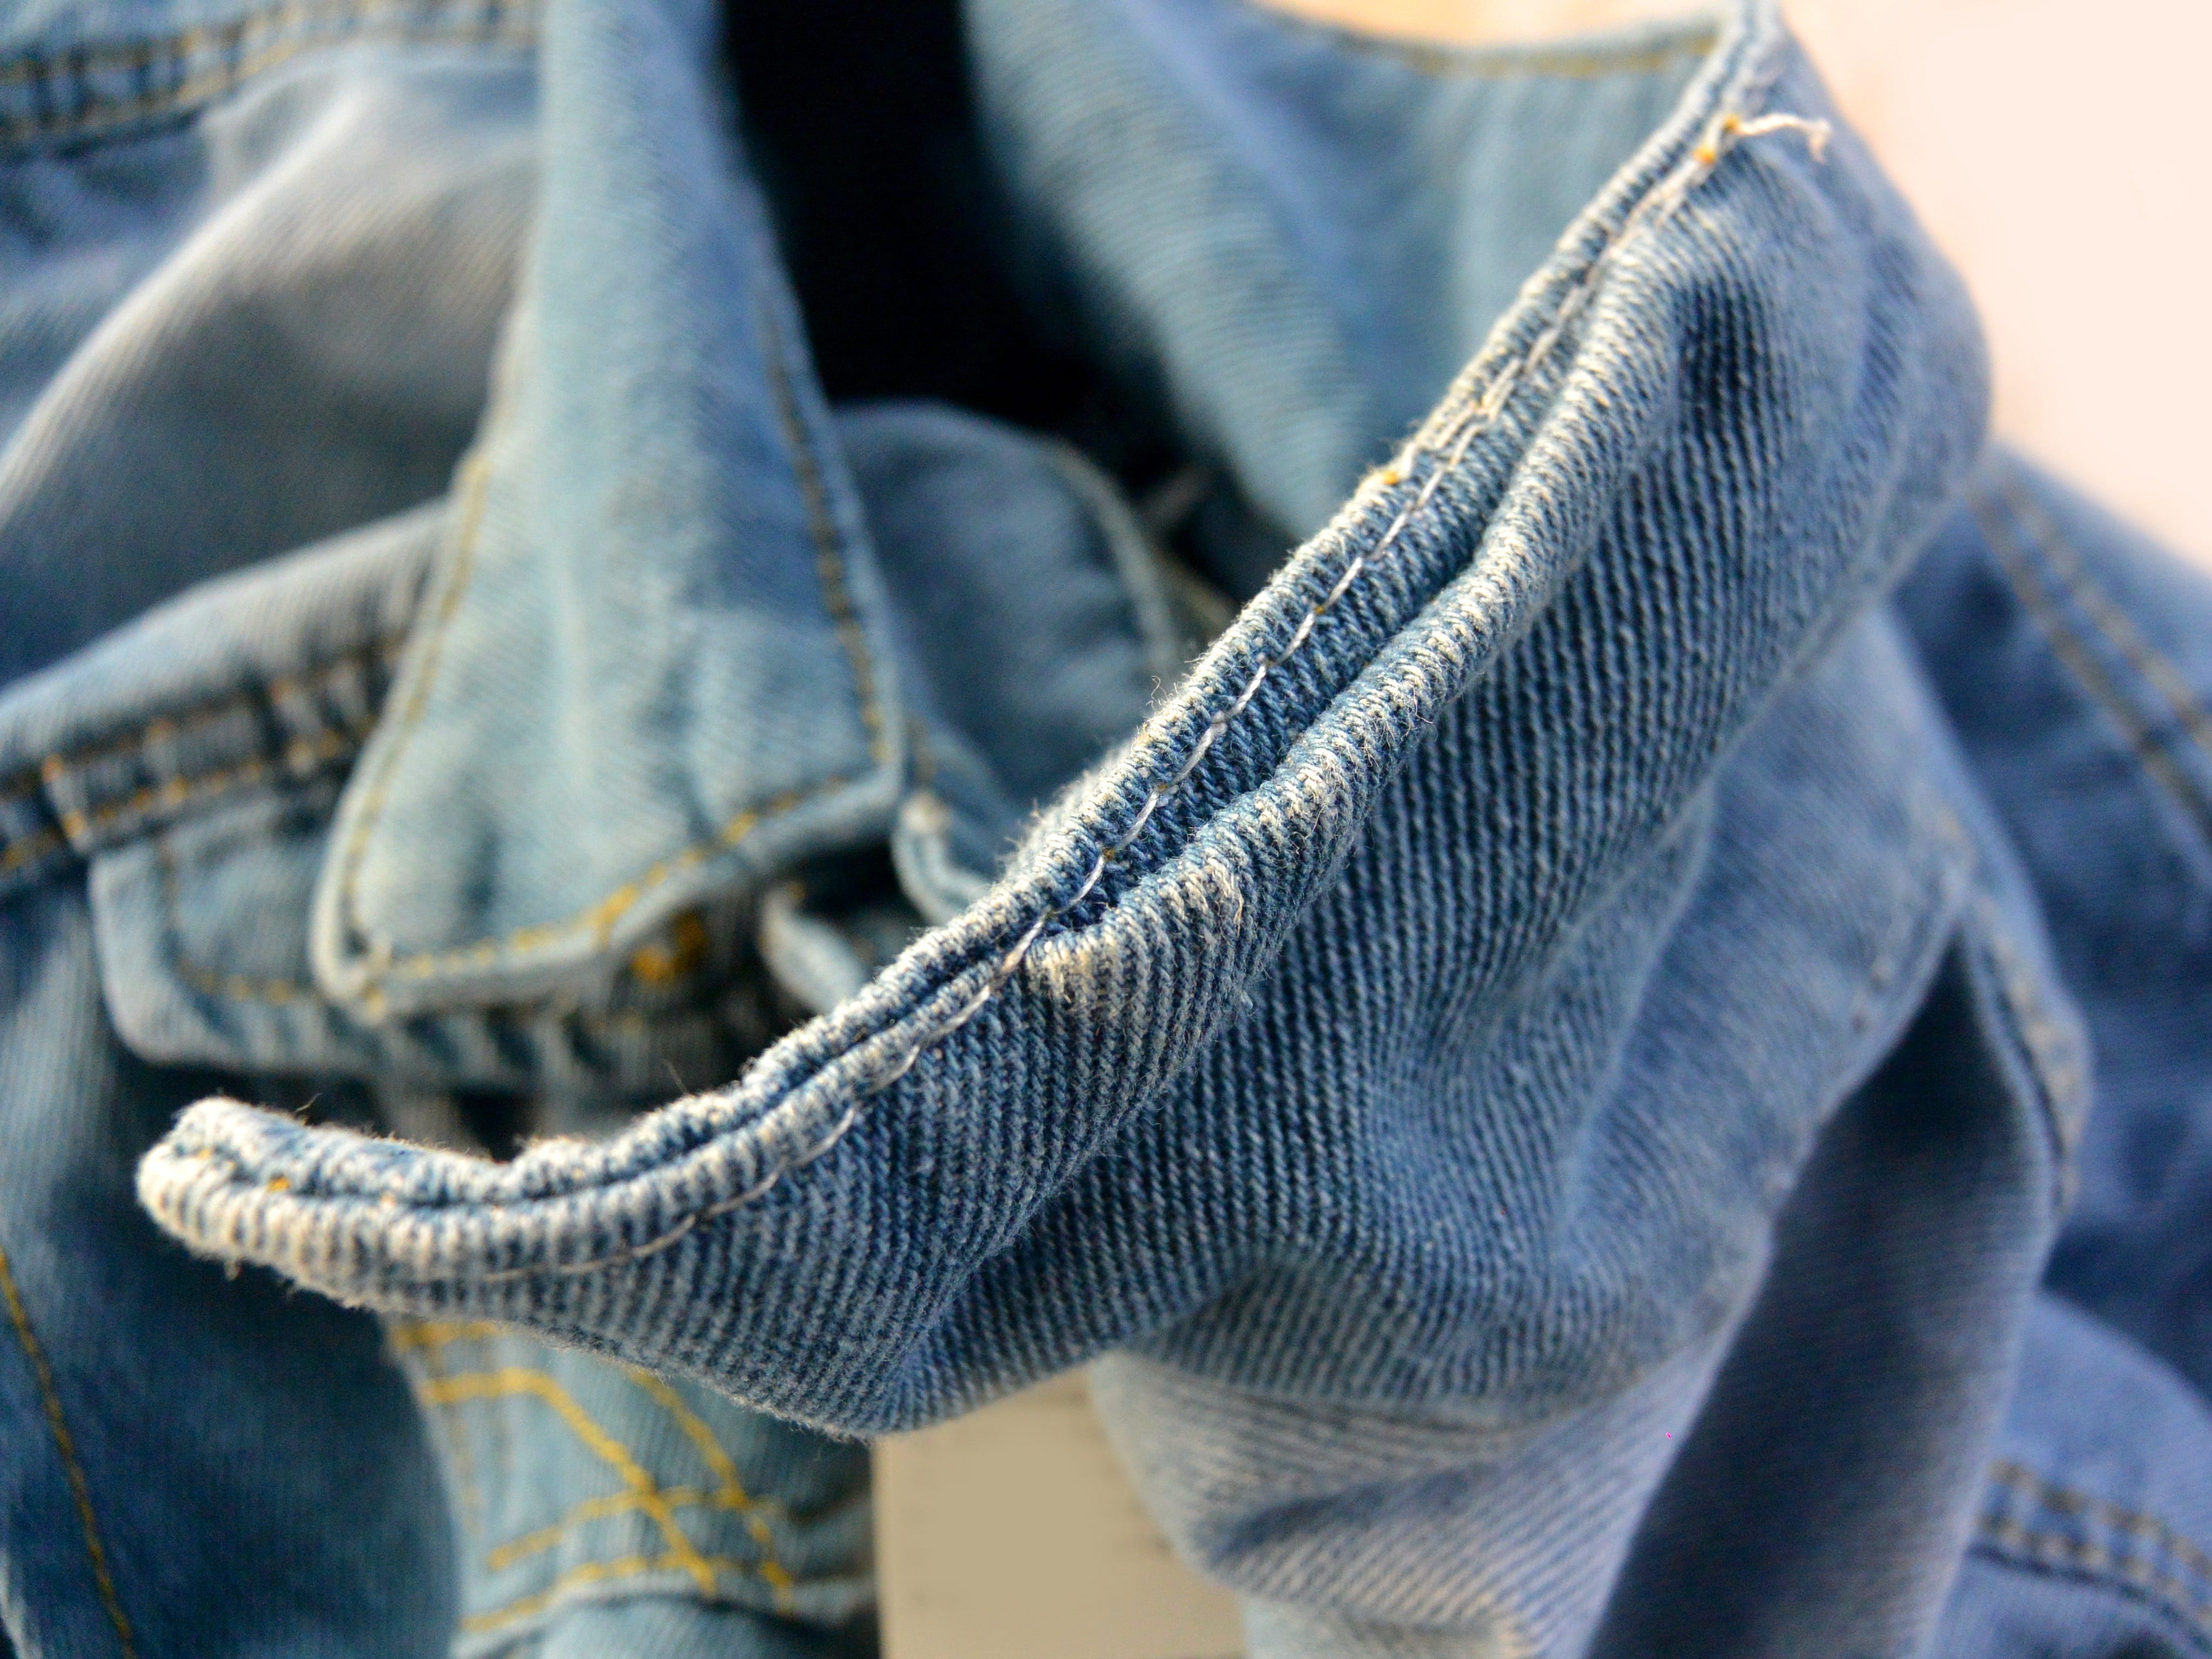 Jeansjacke mit schlechter Nahtqualität.